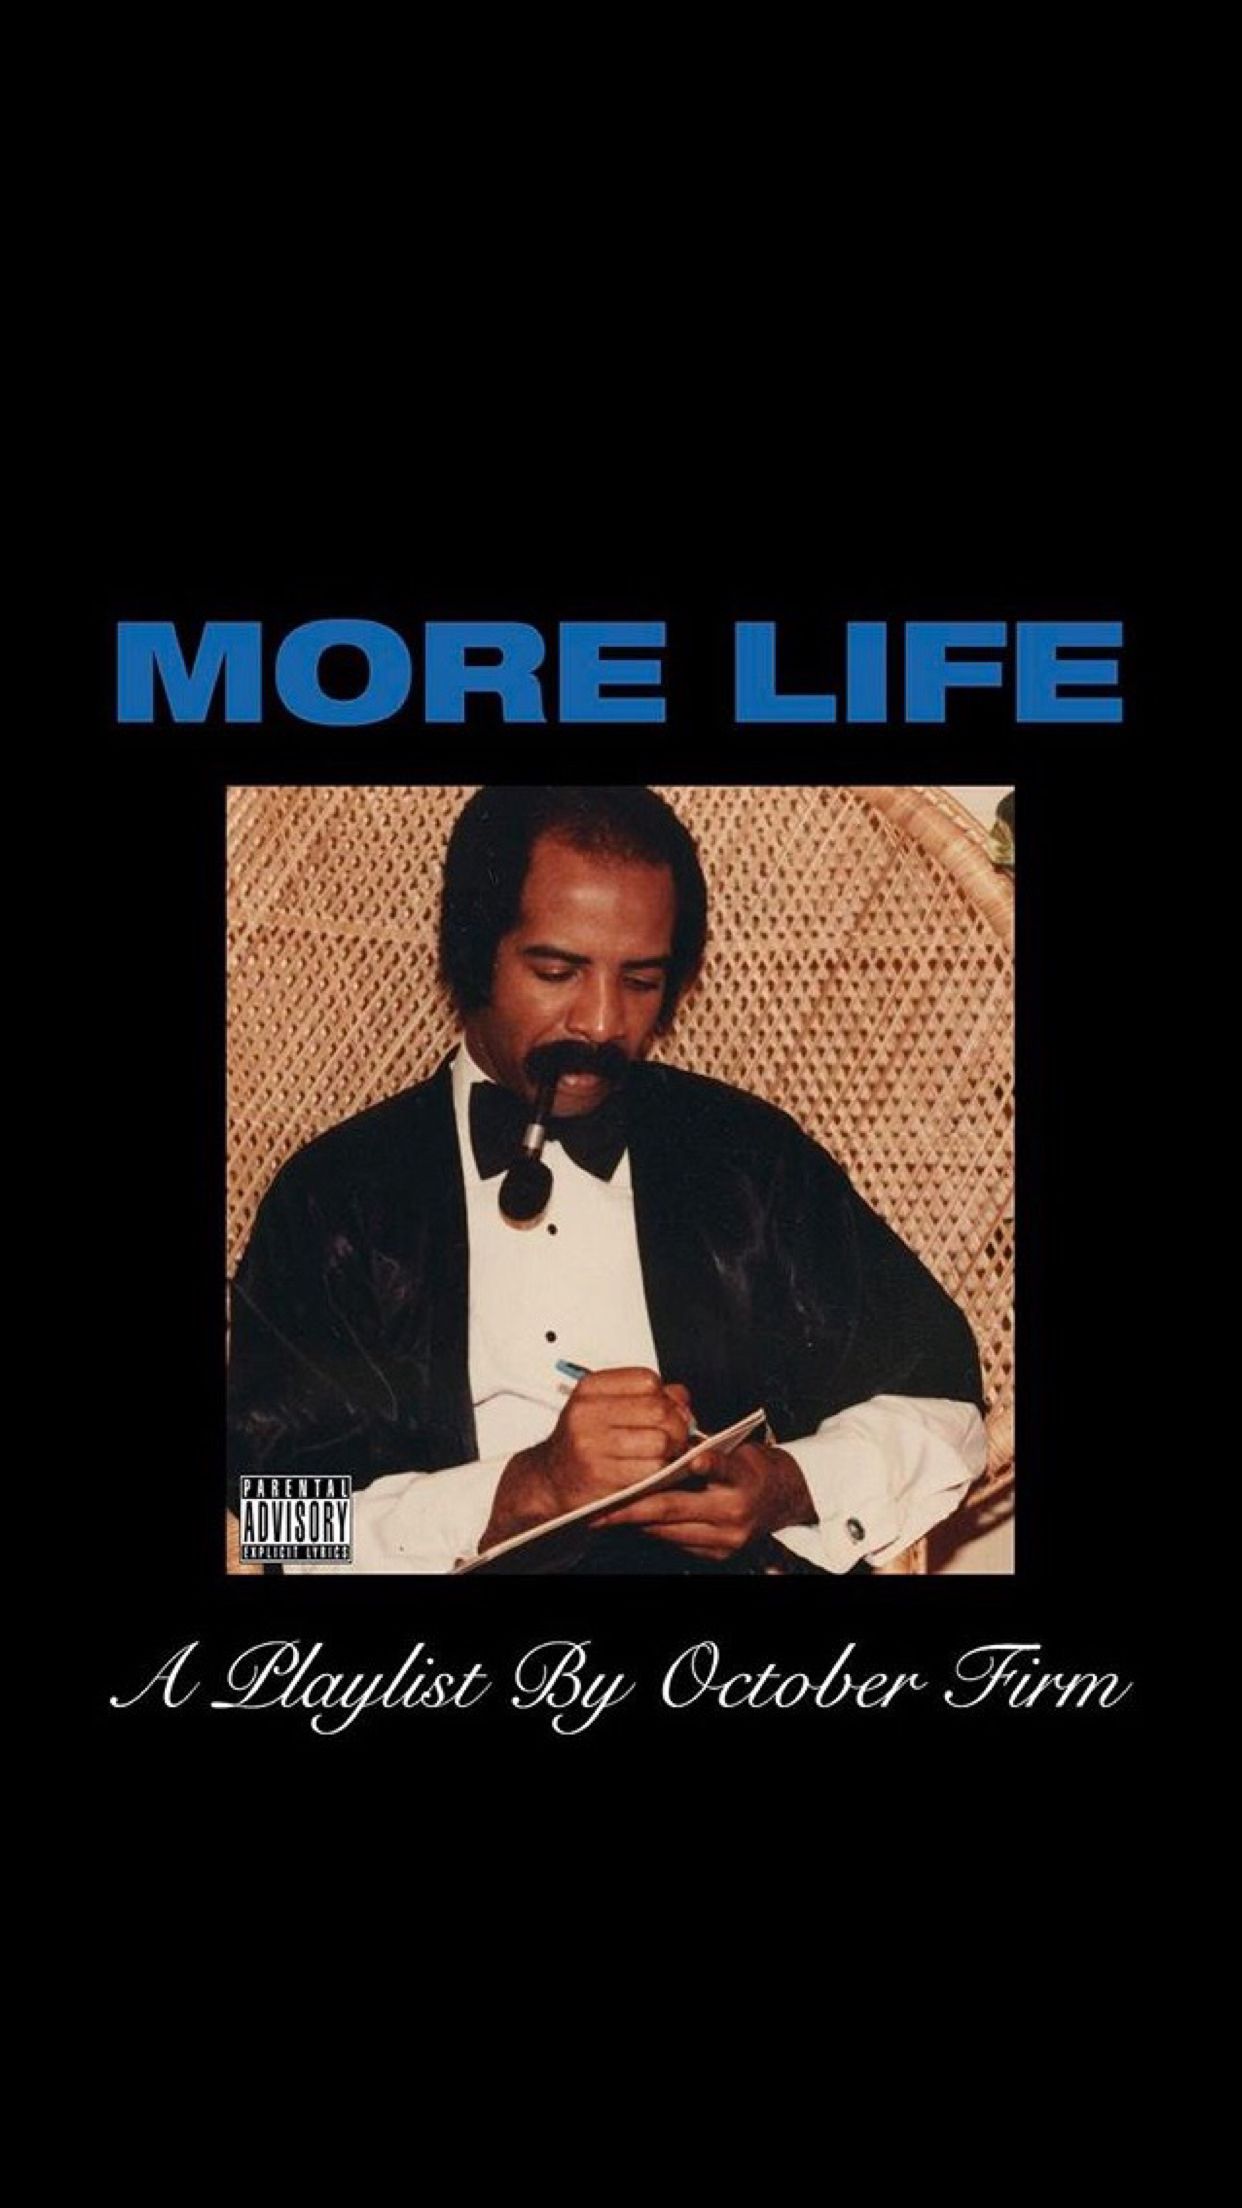 iPhone wallpaper. Drake wallpaper, Album covers, Drake album cover